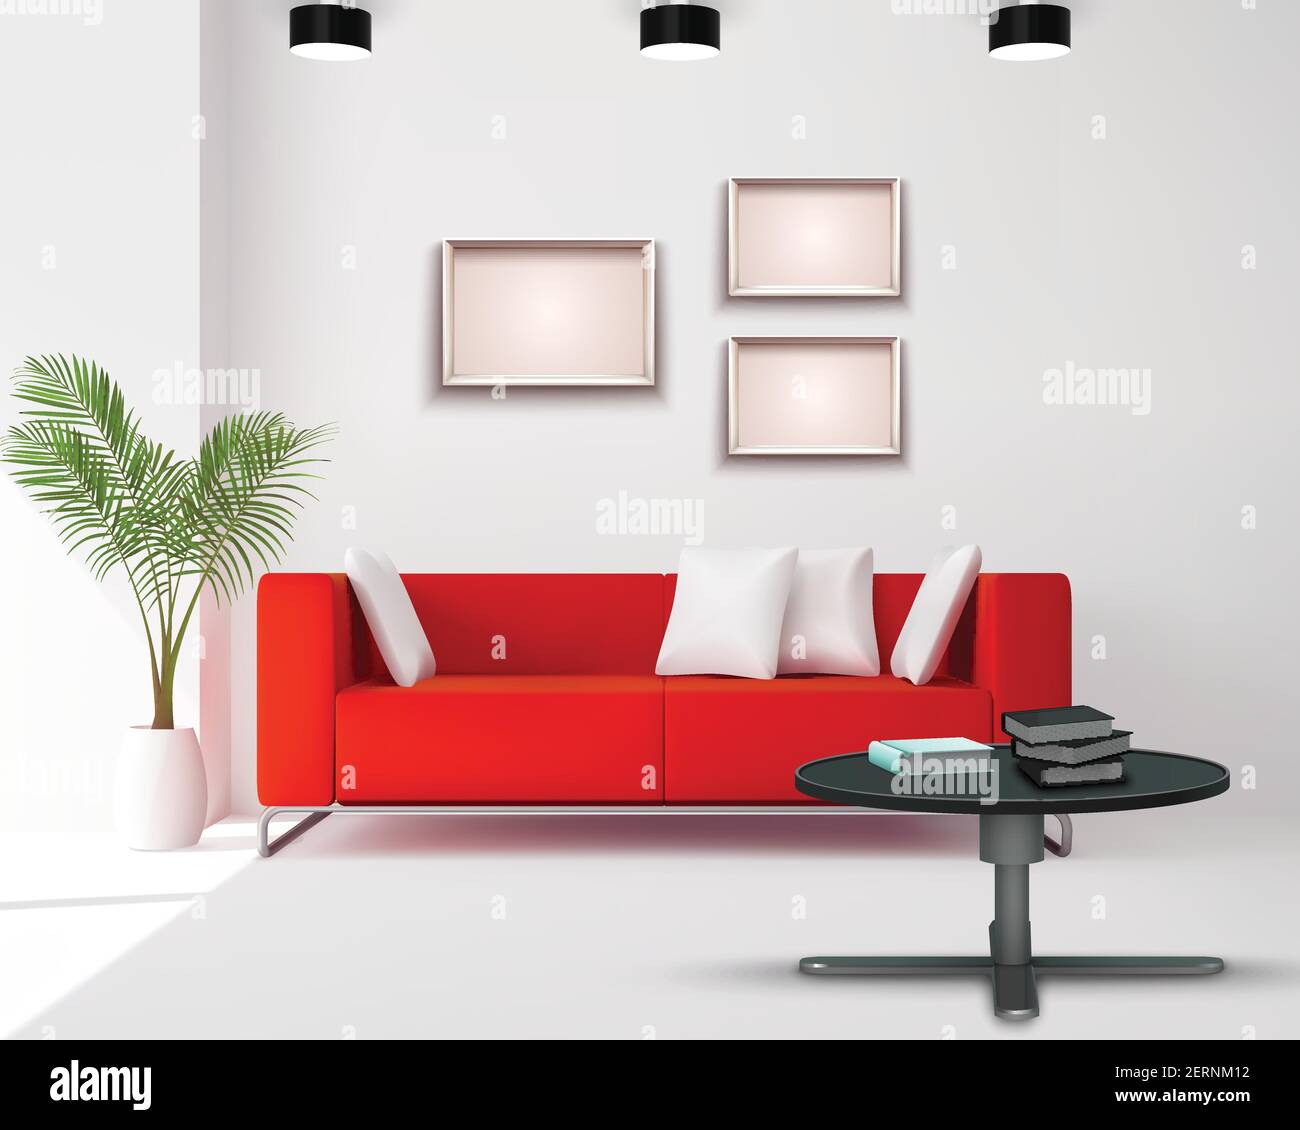 Immagine dello spazio del soggiorno con divano rosso integrato bianco nero dettagli interni illustrazione vettoriale realistica del disegno domestico Illustrazione Vettoriale